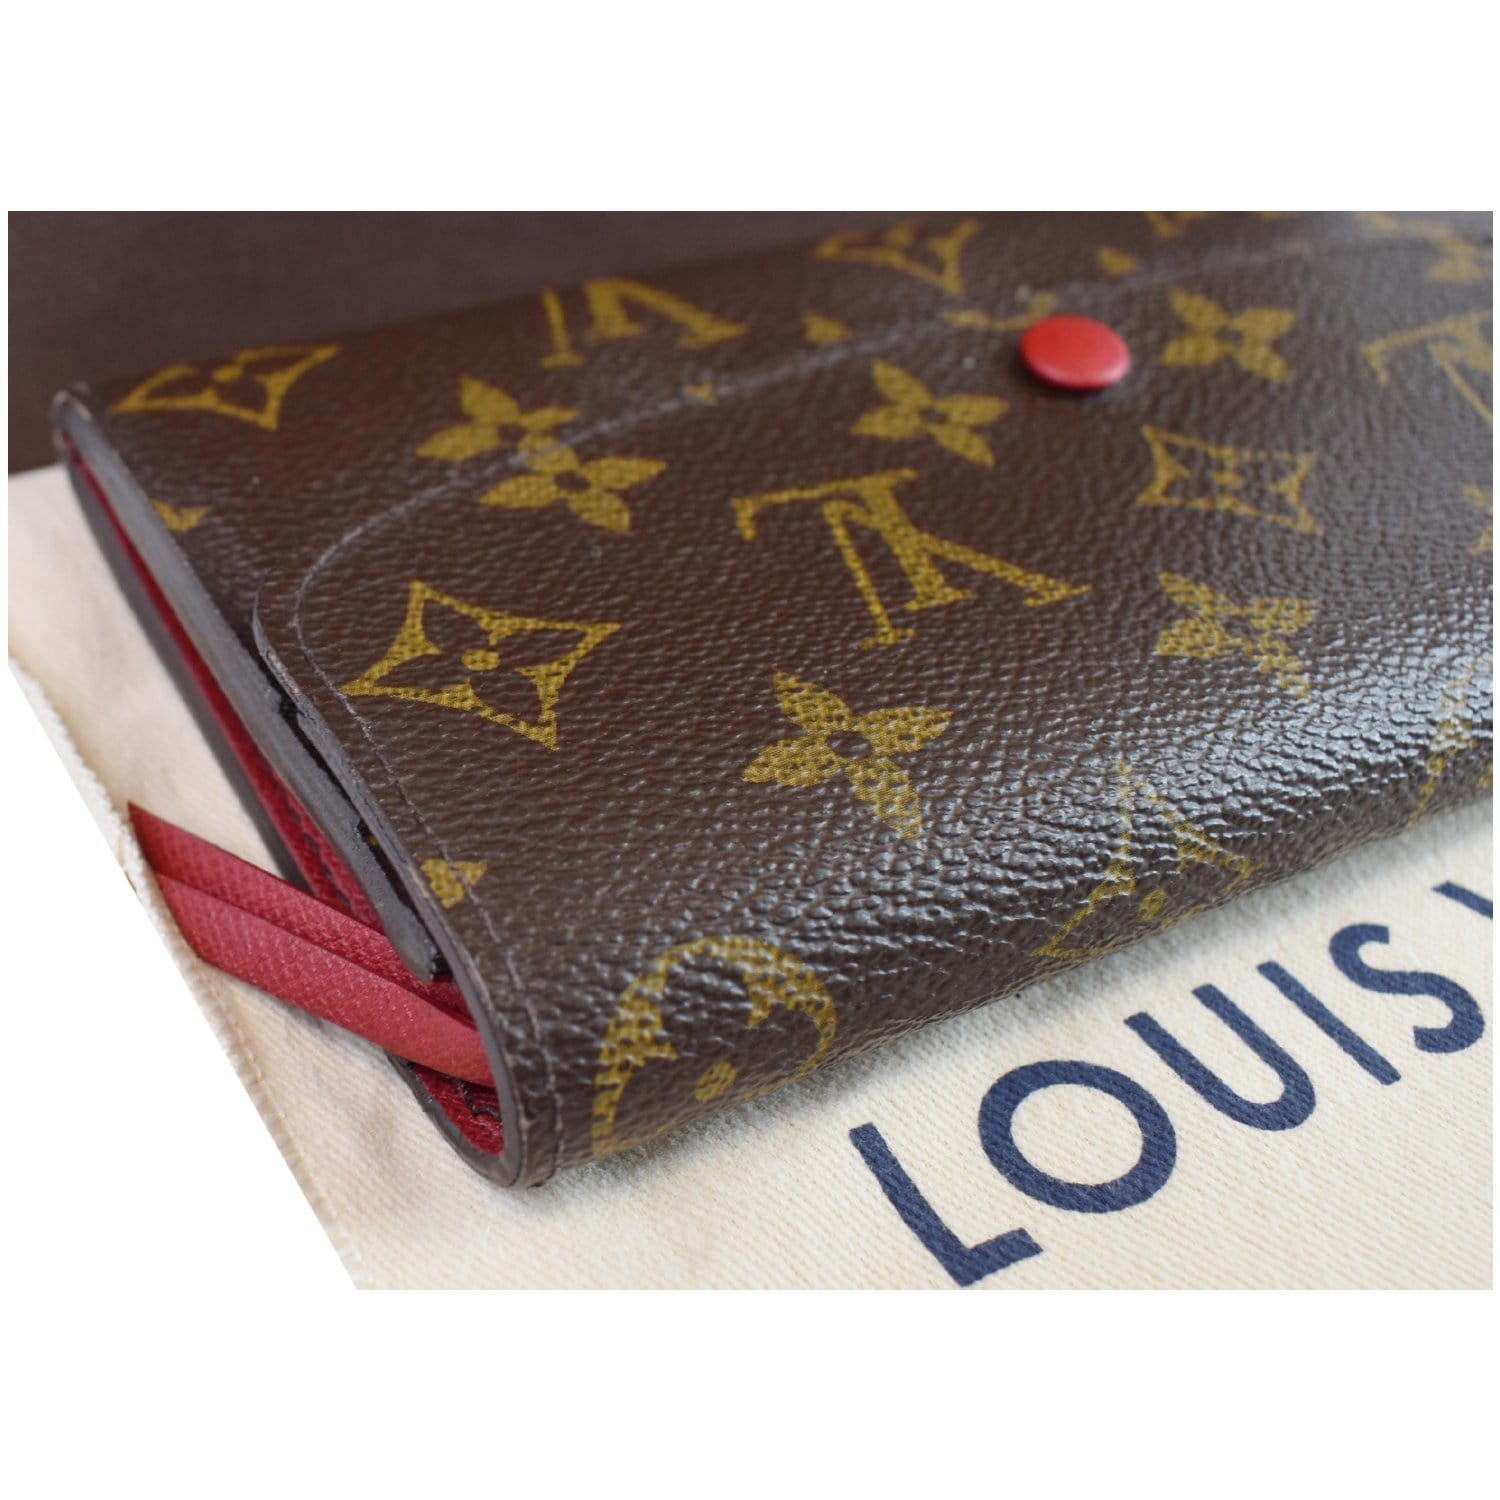 Louis Vuitton Emilie Monogram Canvas Wallet Brown Women